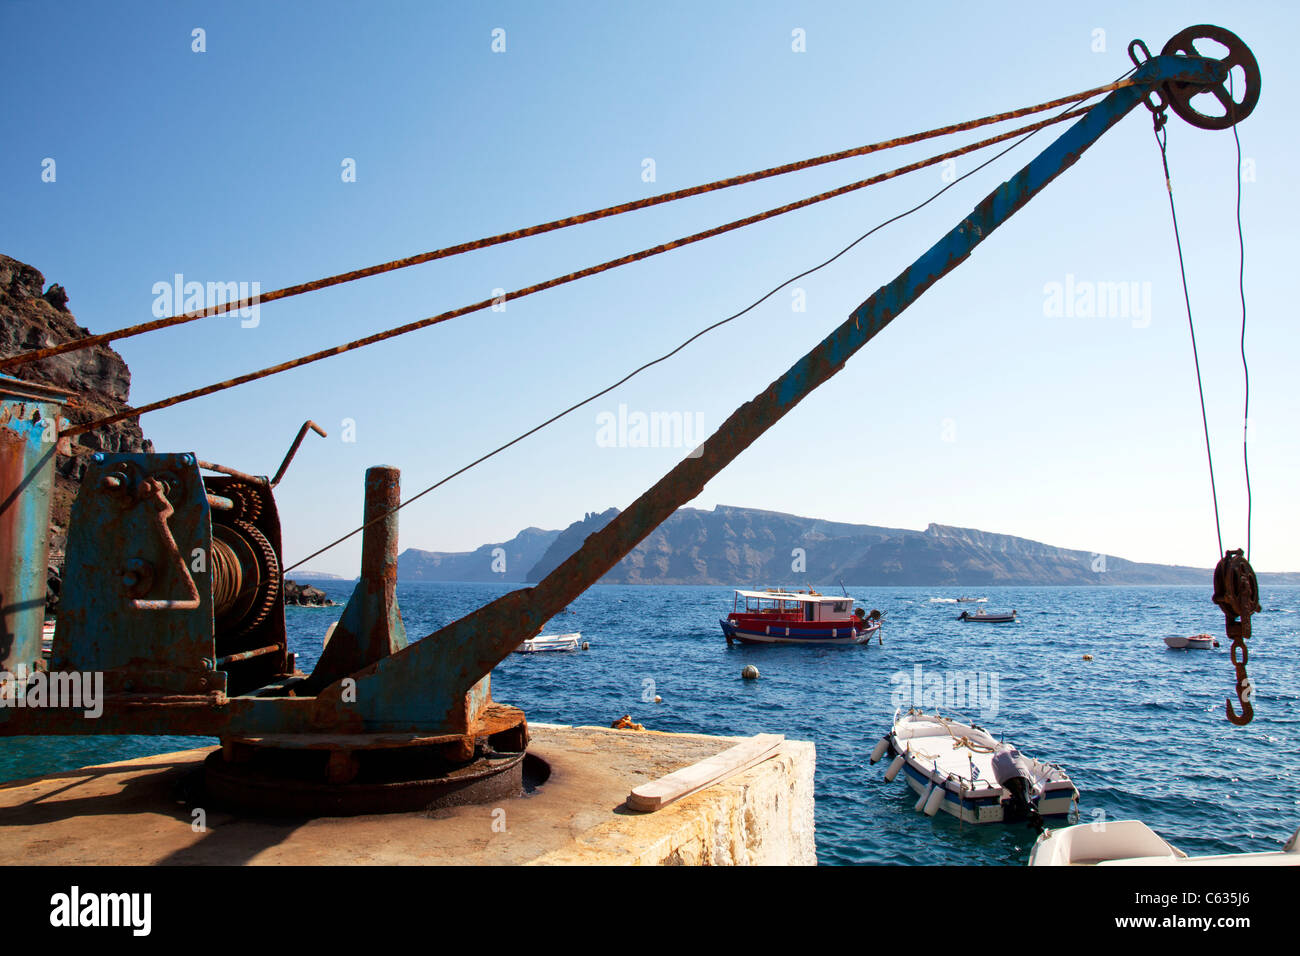 Santorini Griechische Insel Griechenland Winde Fur Waren Auf Booten Bringen Aktien Auf Die Insel Stockfotografie Alamy